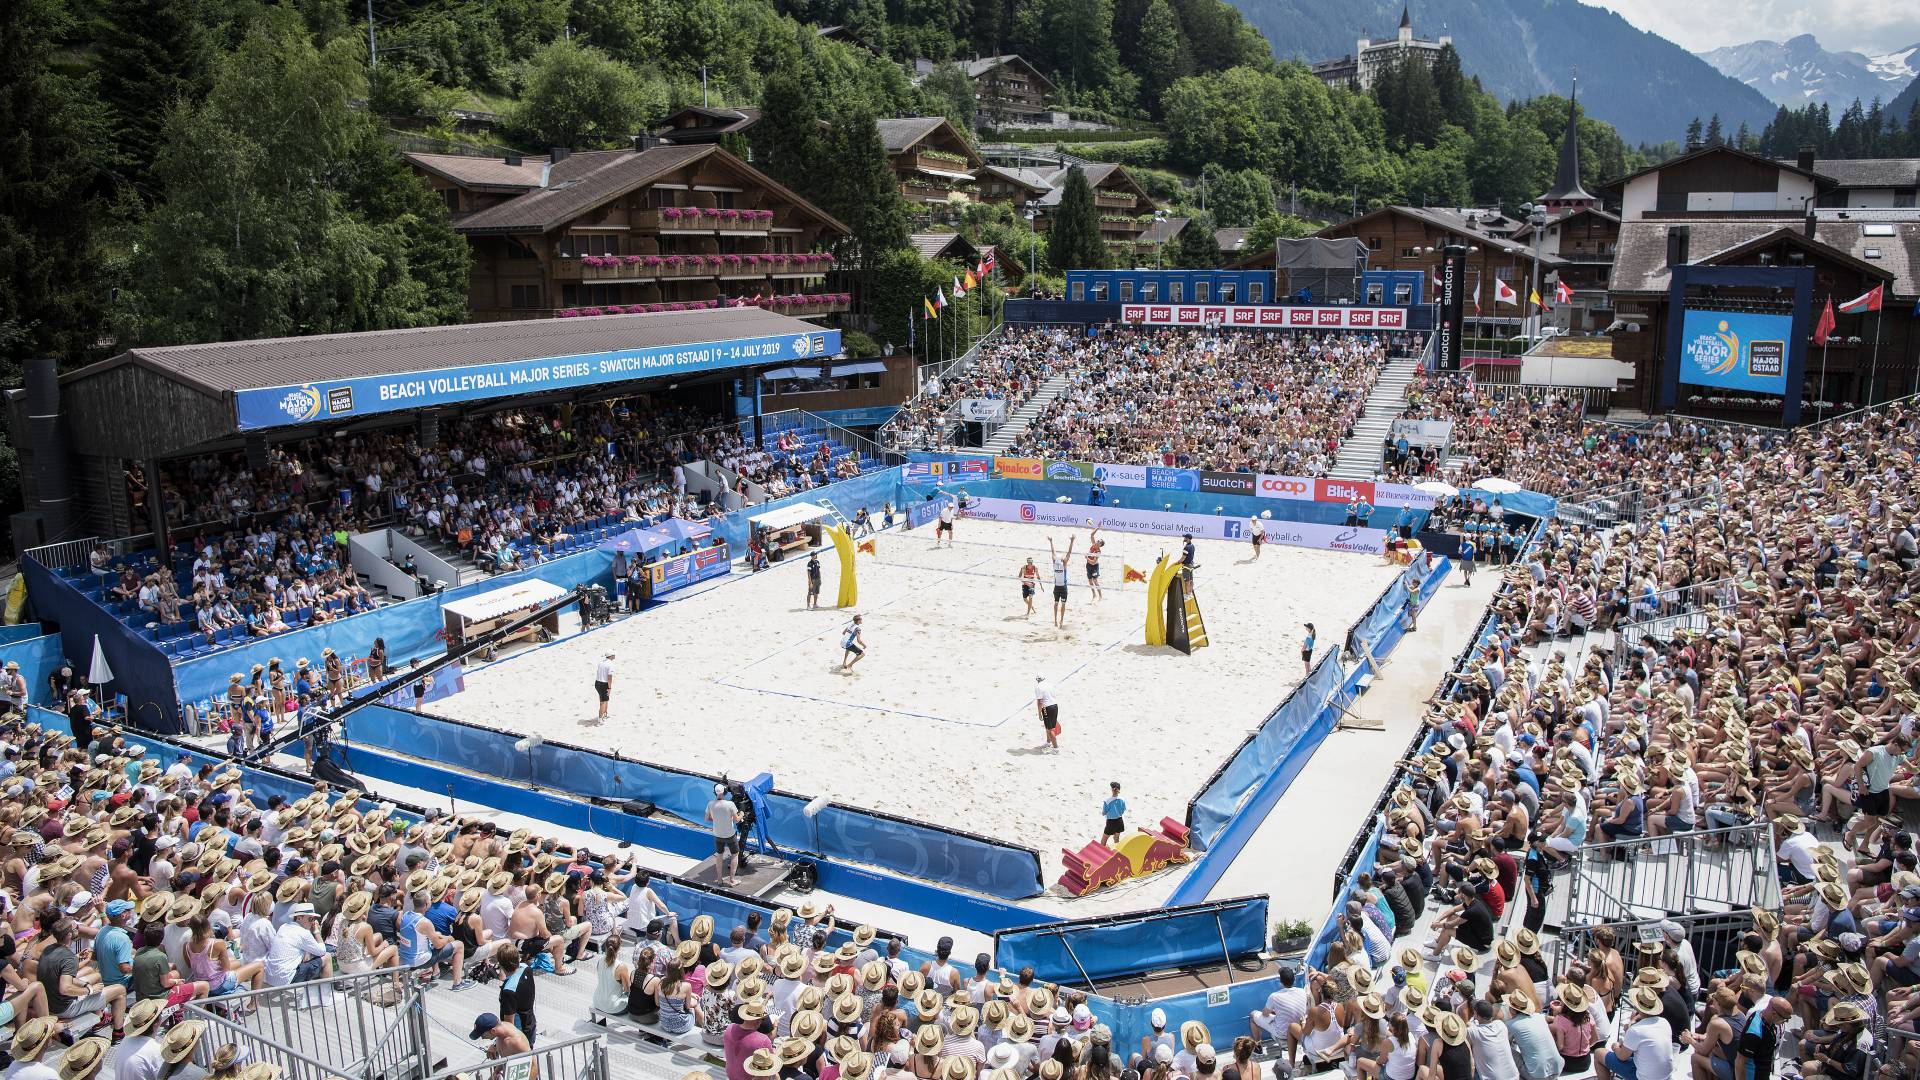 Beachvolleyball-Turnier in Gstaad